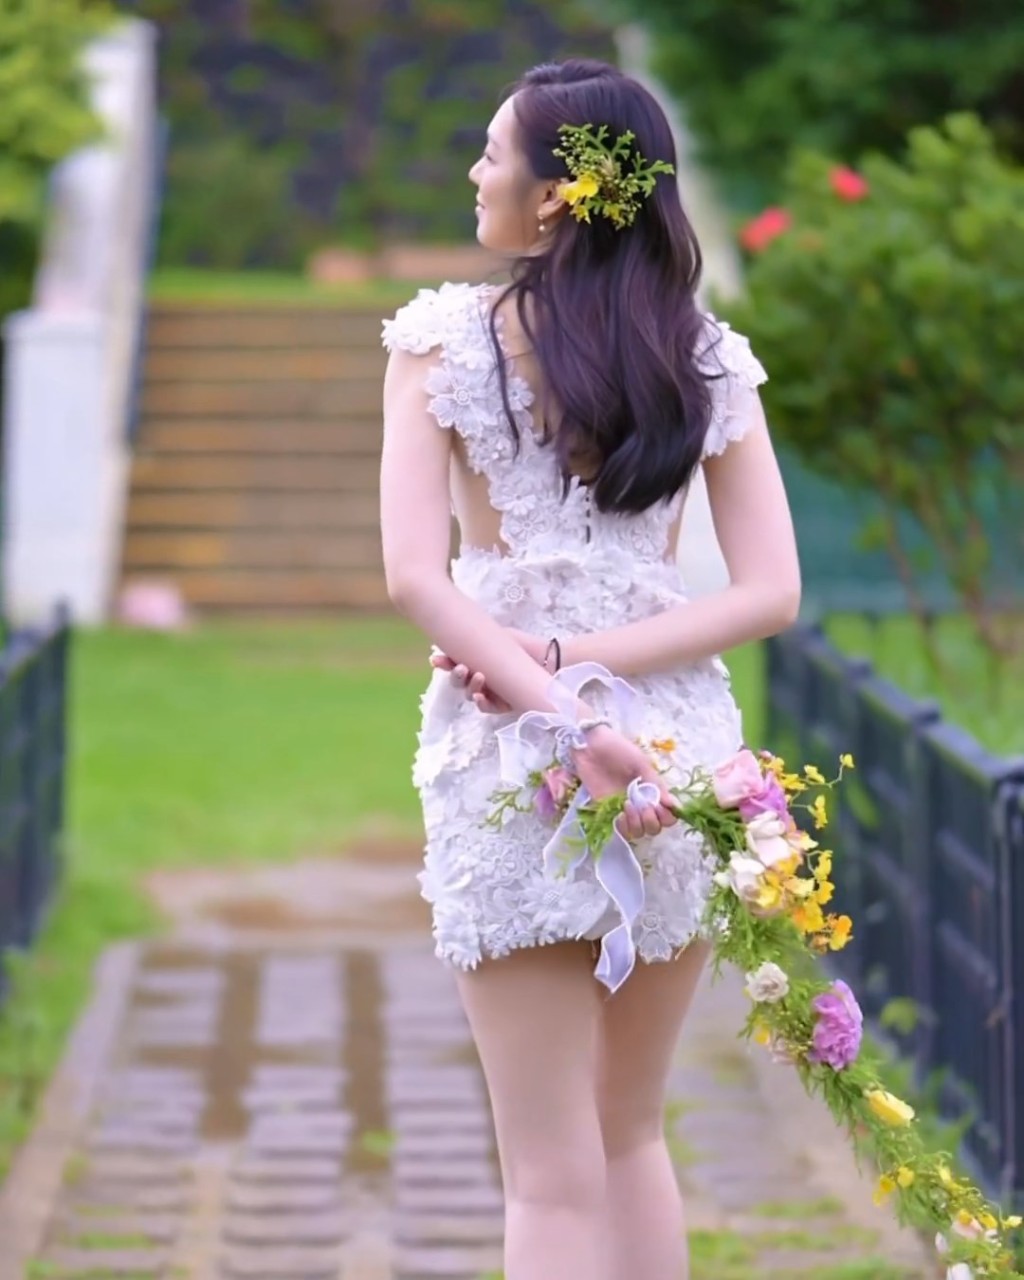 冯盈盈自穿的婚纱非常短。